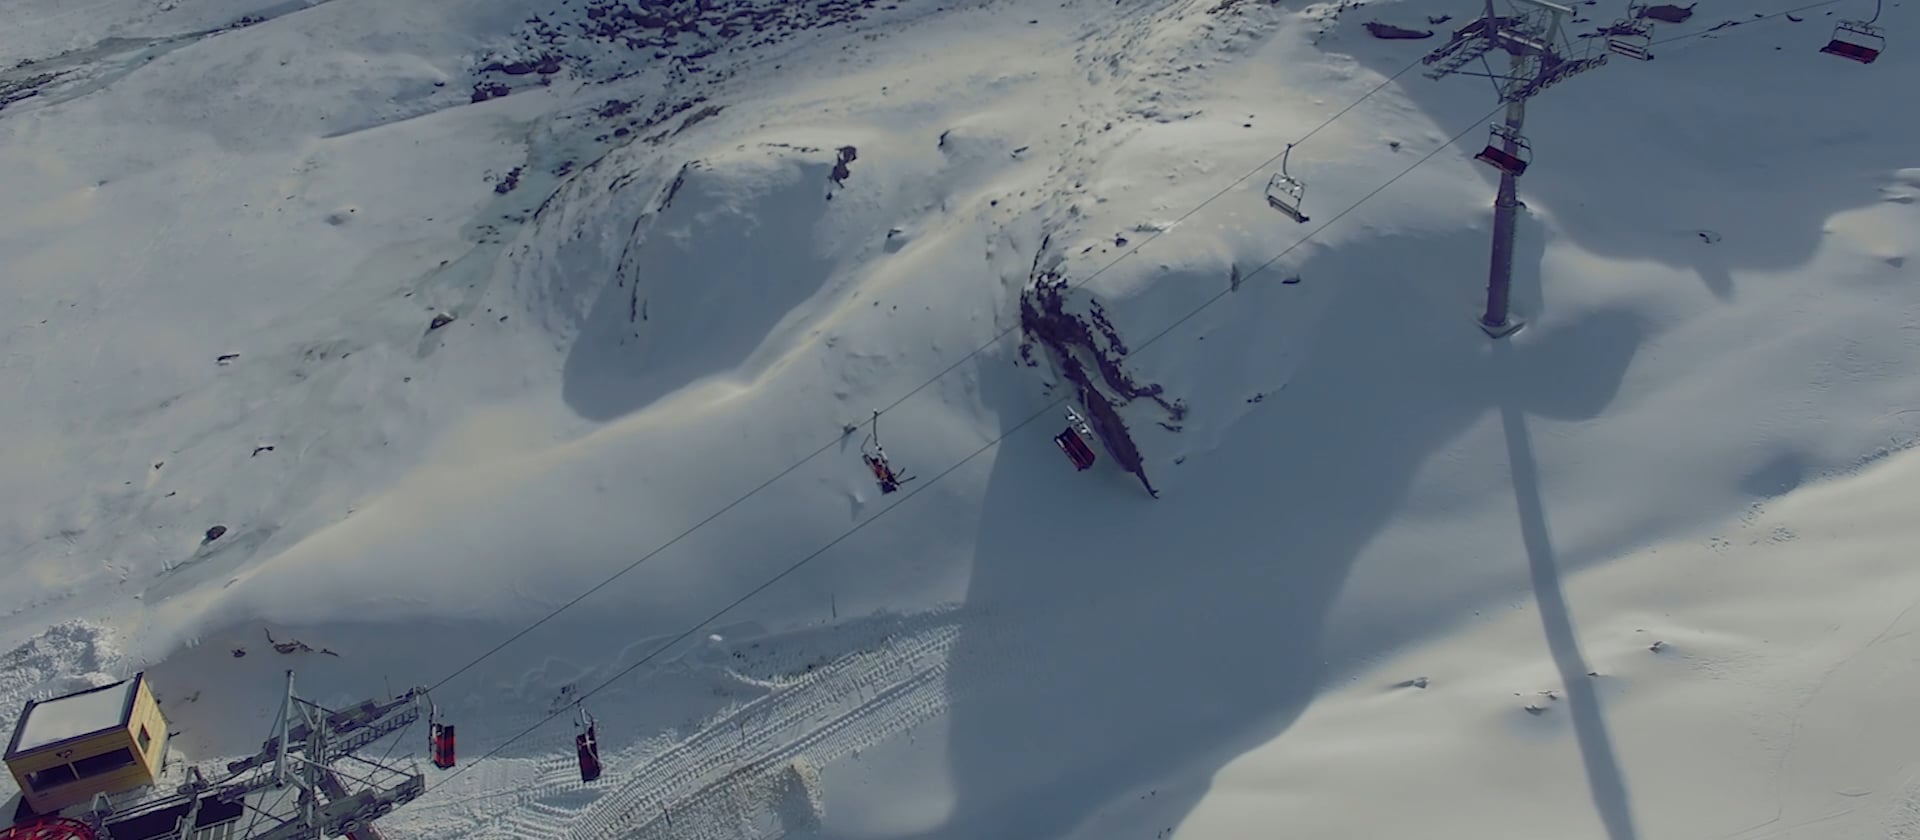 Corvatsch: video report situazione neve e piste a dicembre 2015